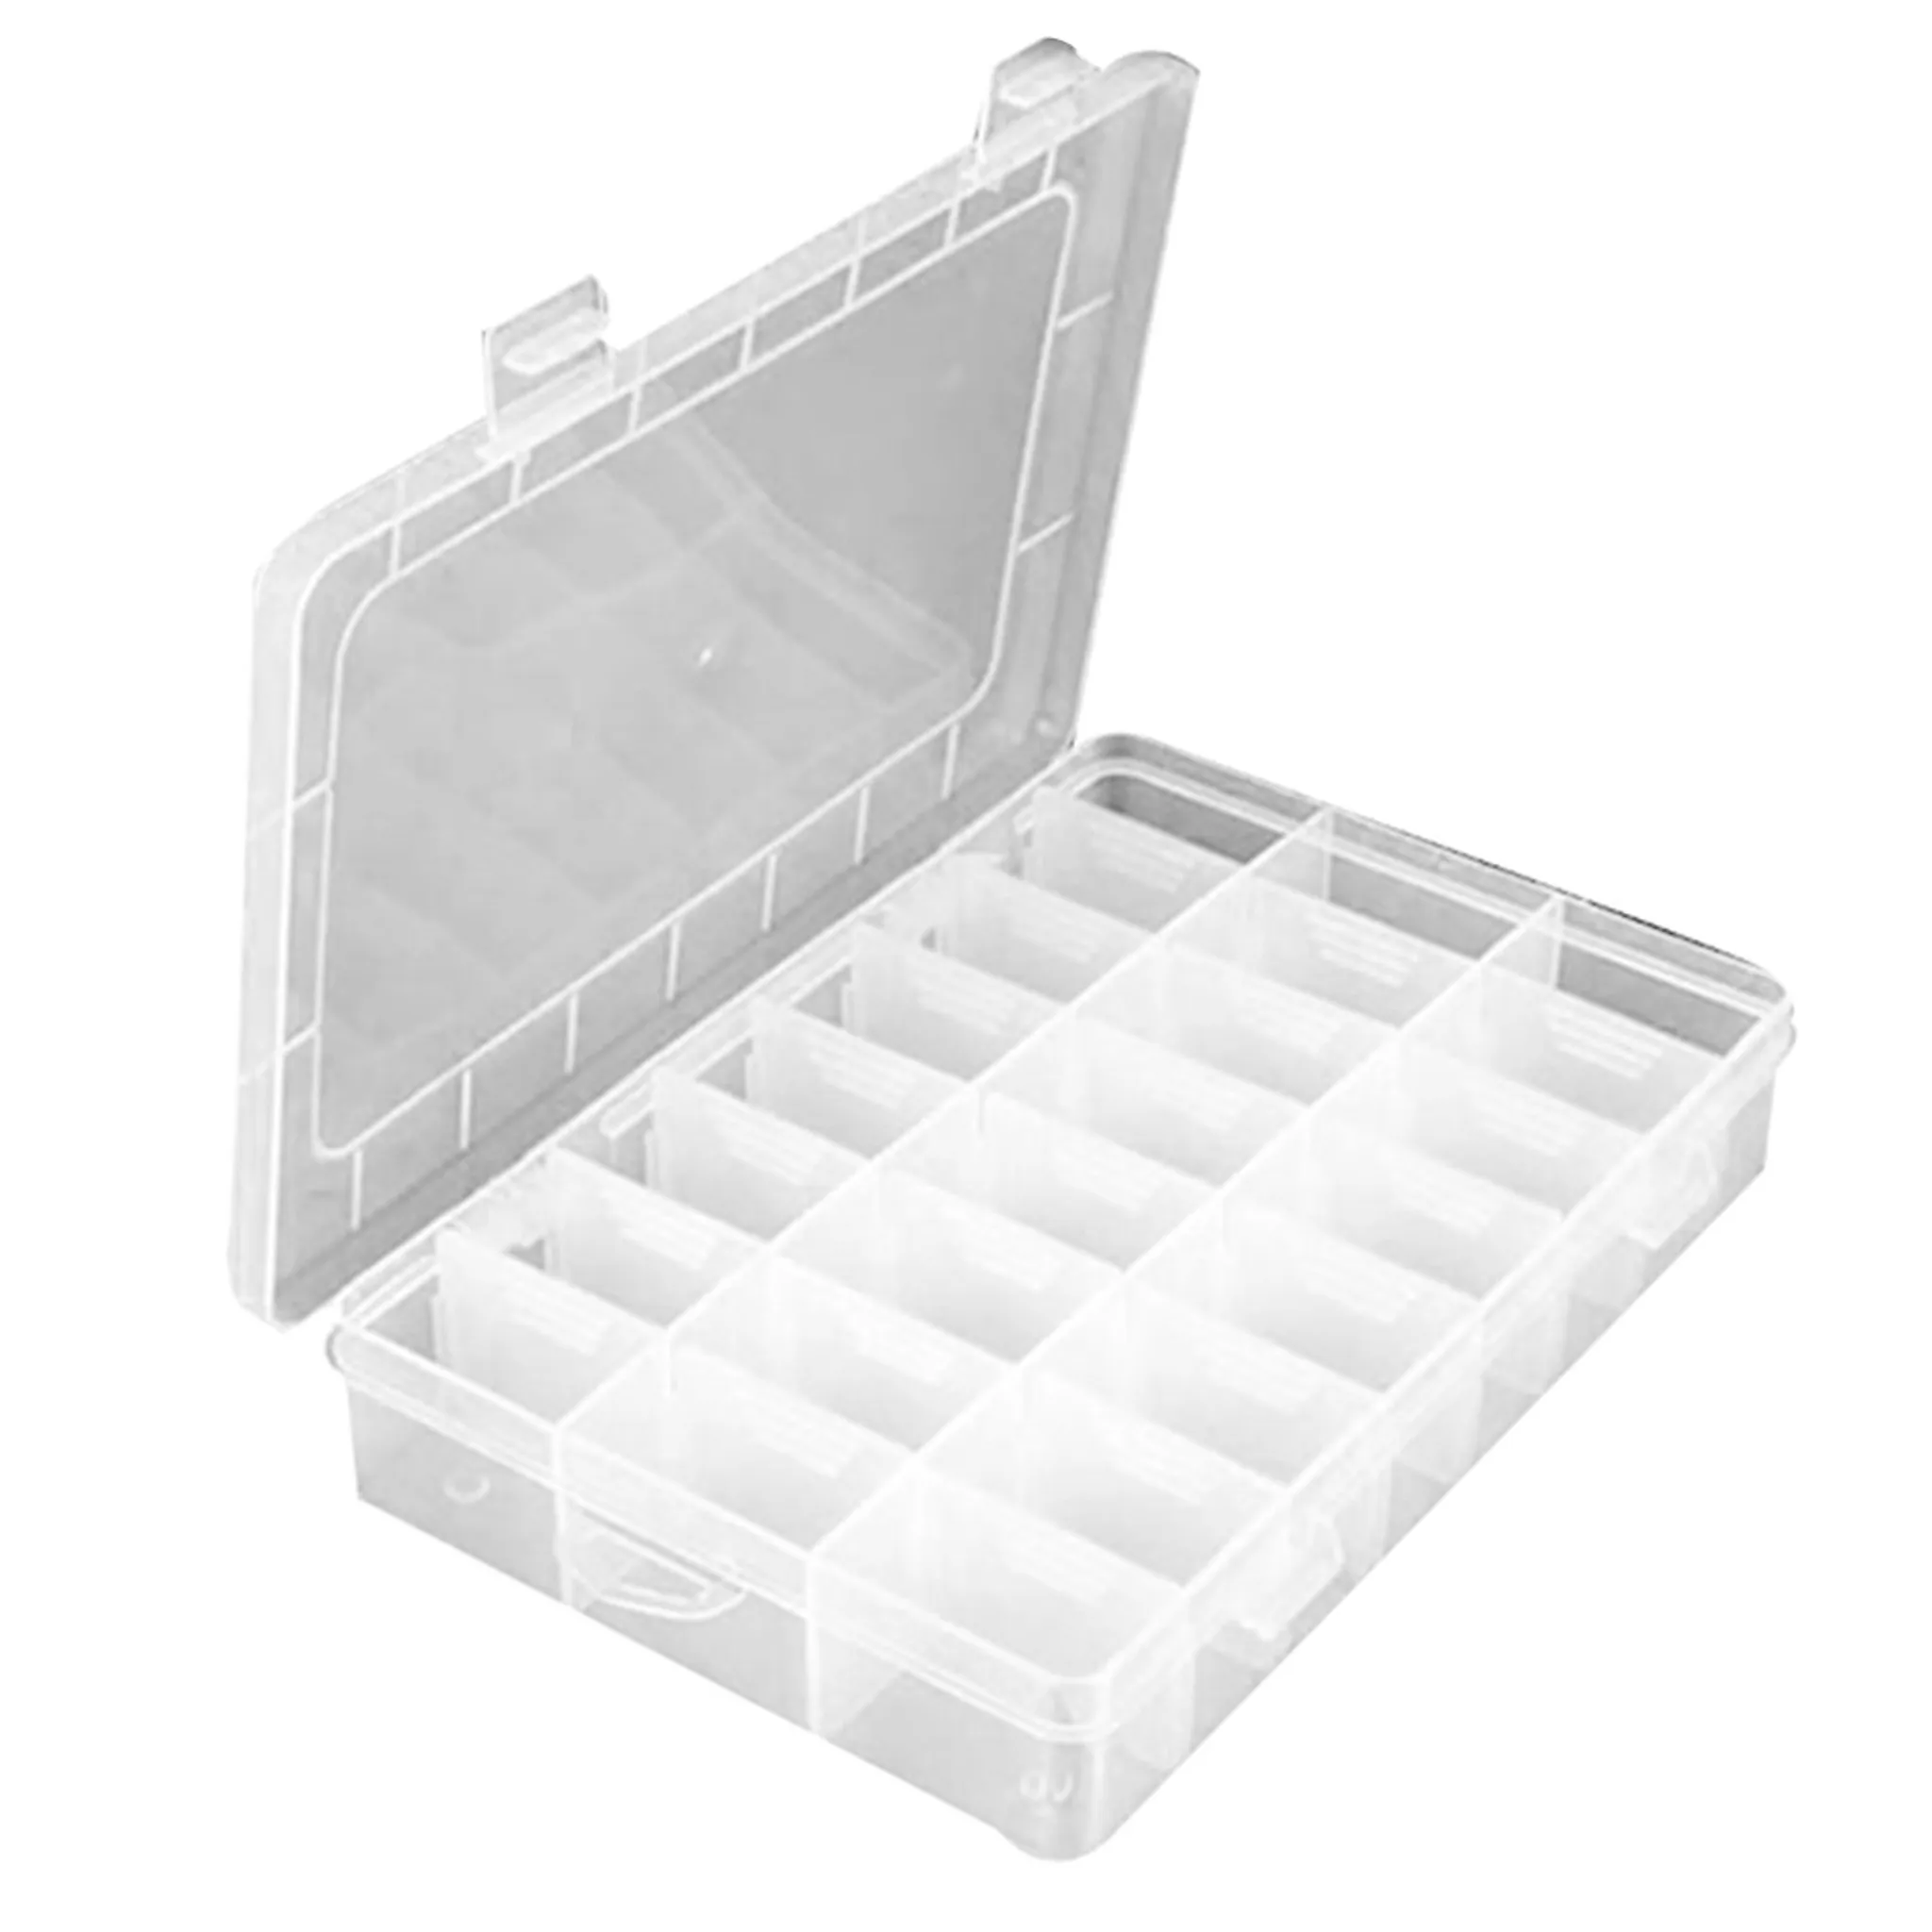 Werkzeugkiste Organizer Sortierkasten Schraubenbox Kiste, 4,95 €